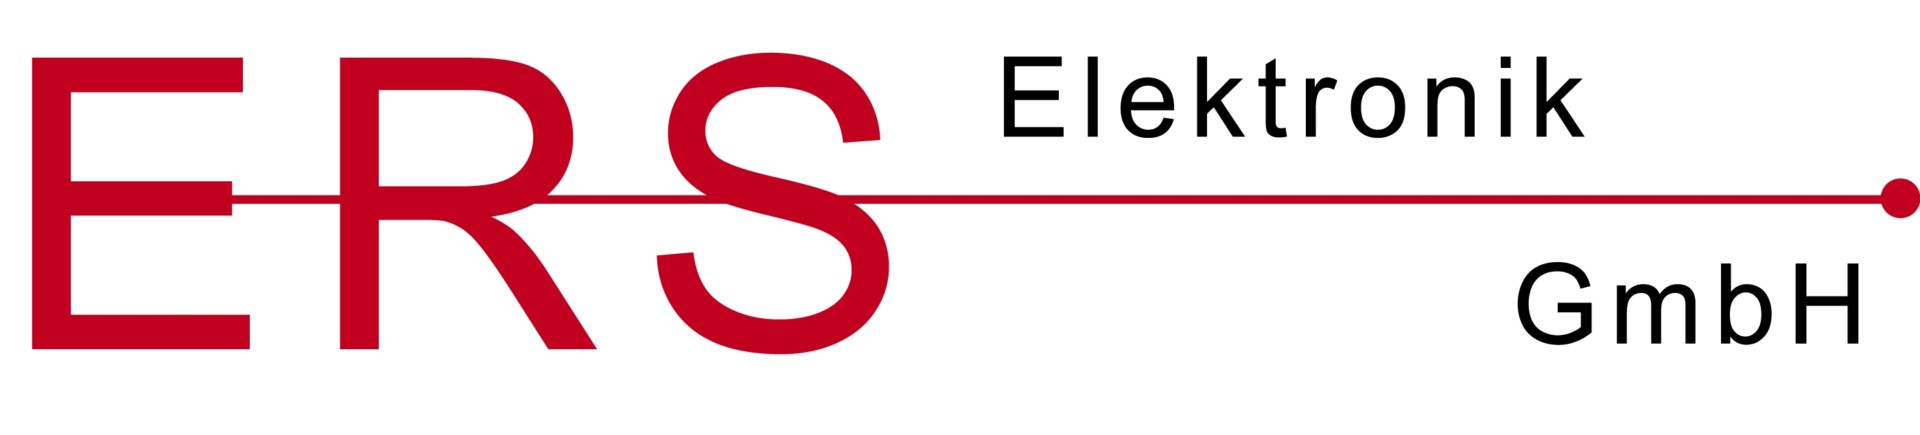 ERS-Logo2-2